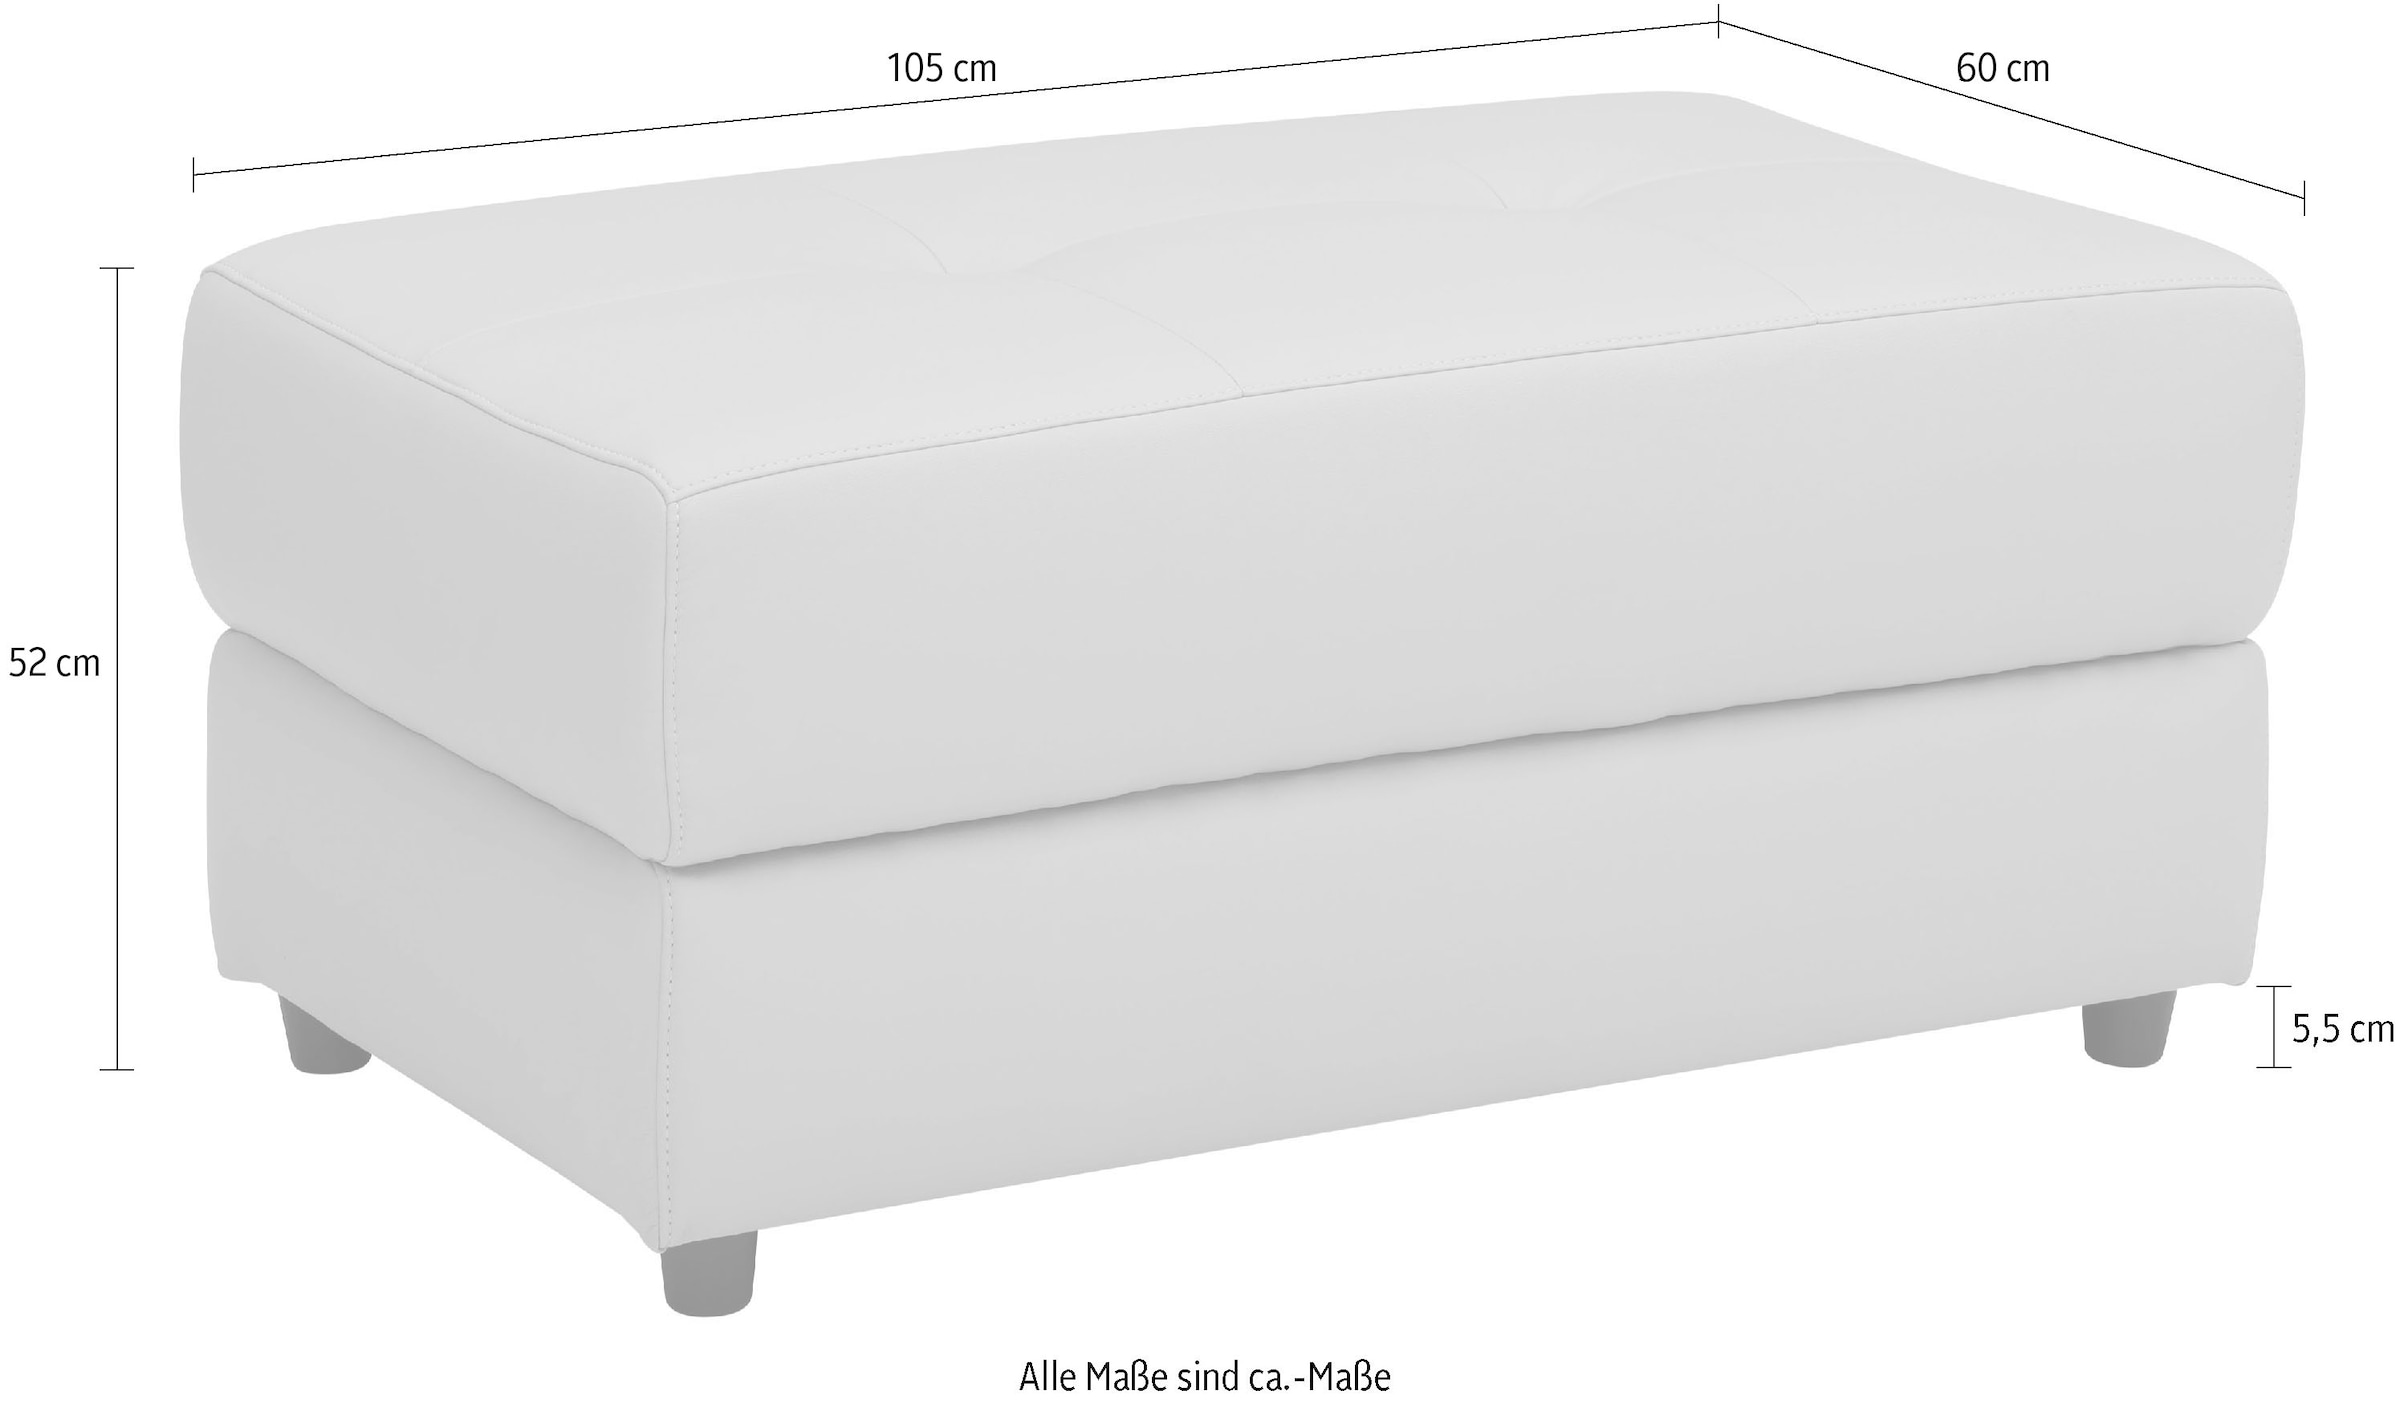 Home affaire Polsterhocker »Sentrano + Kilado«, in 4 Bezugsqualitäten, mit komfortablen Federkern, Gesamtbreite 105 cm